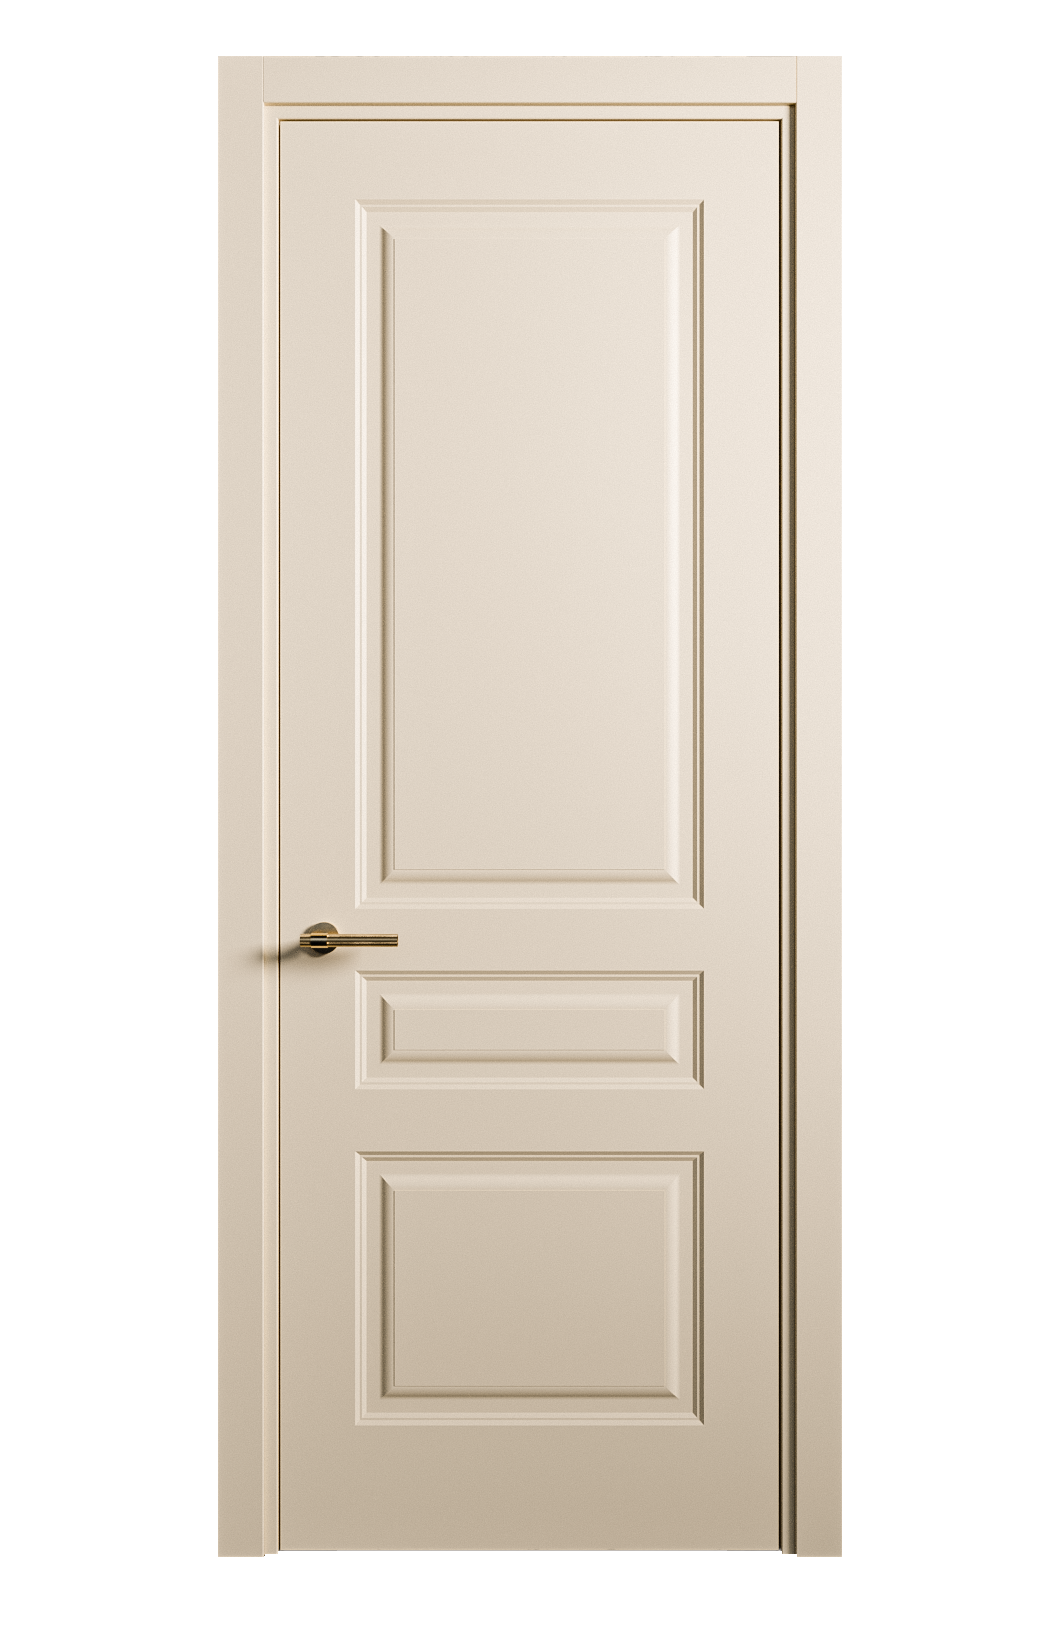 Межкомнатная дверь Вита-2 глухая эмаль ral 1015 26319